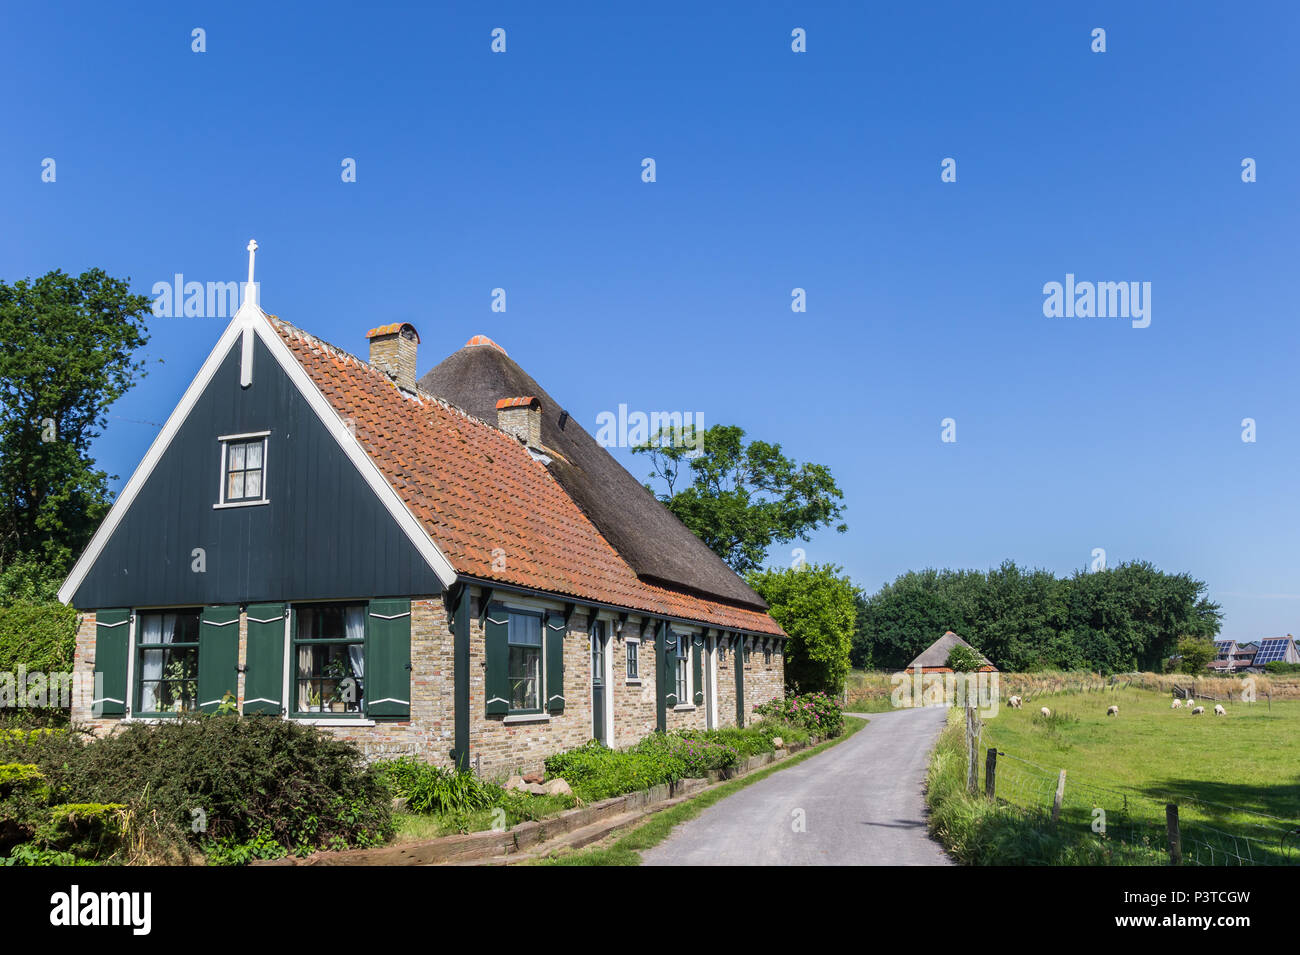 Chambre néerlandaise traditionnelle dans le paysage de l'île de Texel, Pays-Bas Banque D'Images